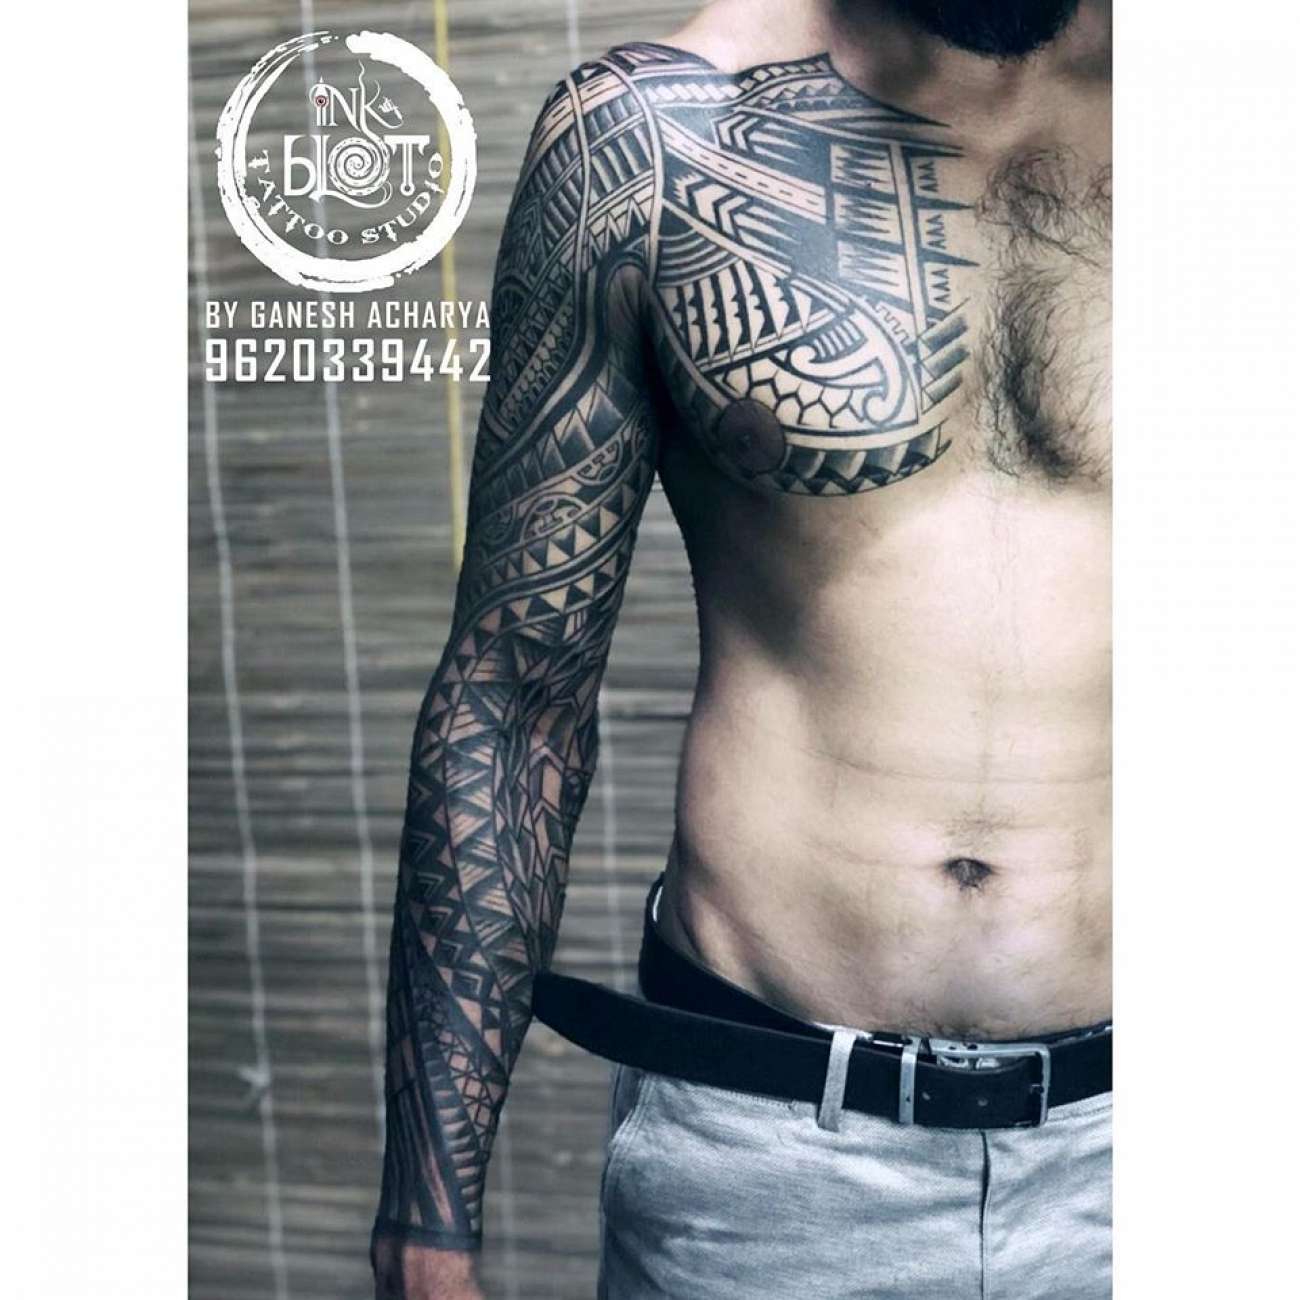 Tattoo uploaded by InkBlot Tattoo studio • Full back tattoos by inkblot  tattoos contact 9620339442 • Tattoodo